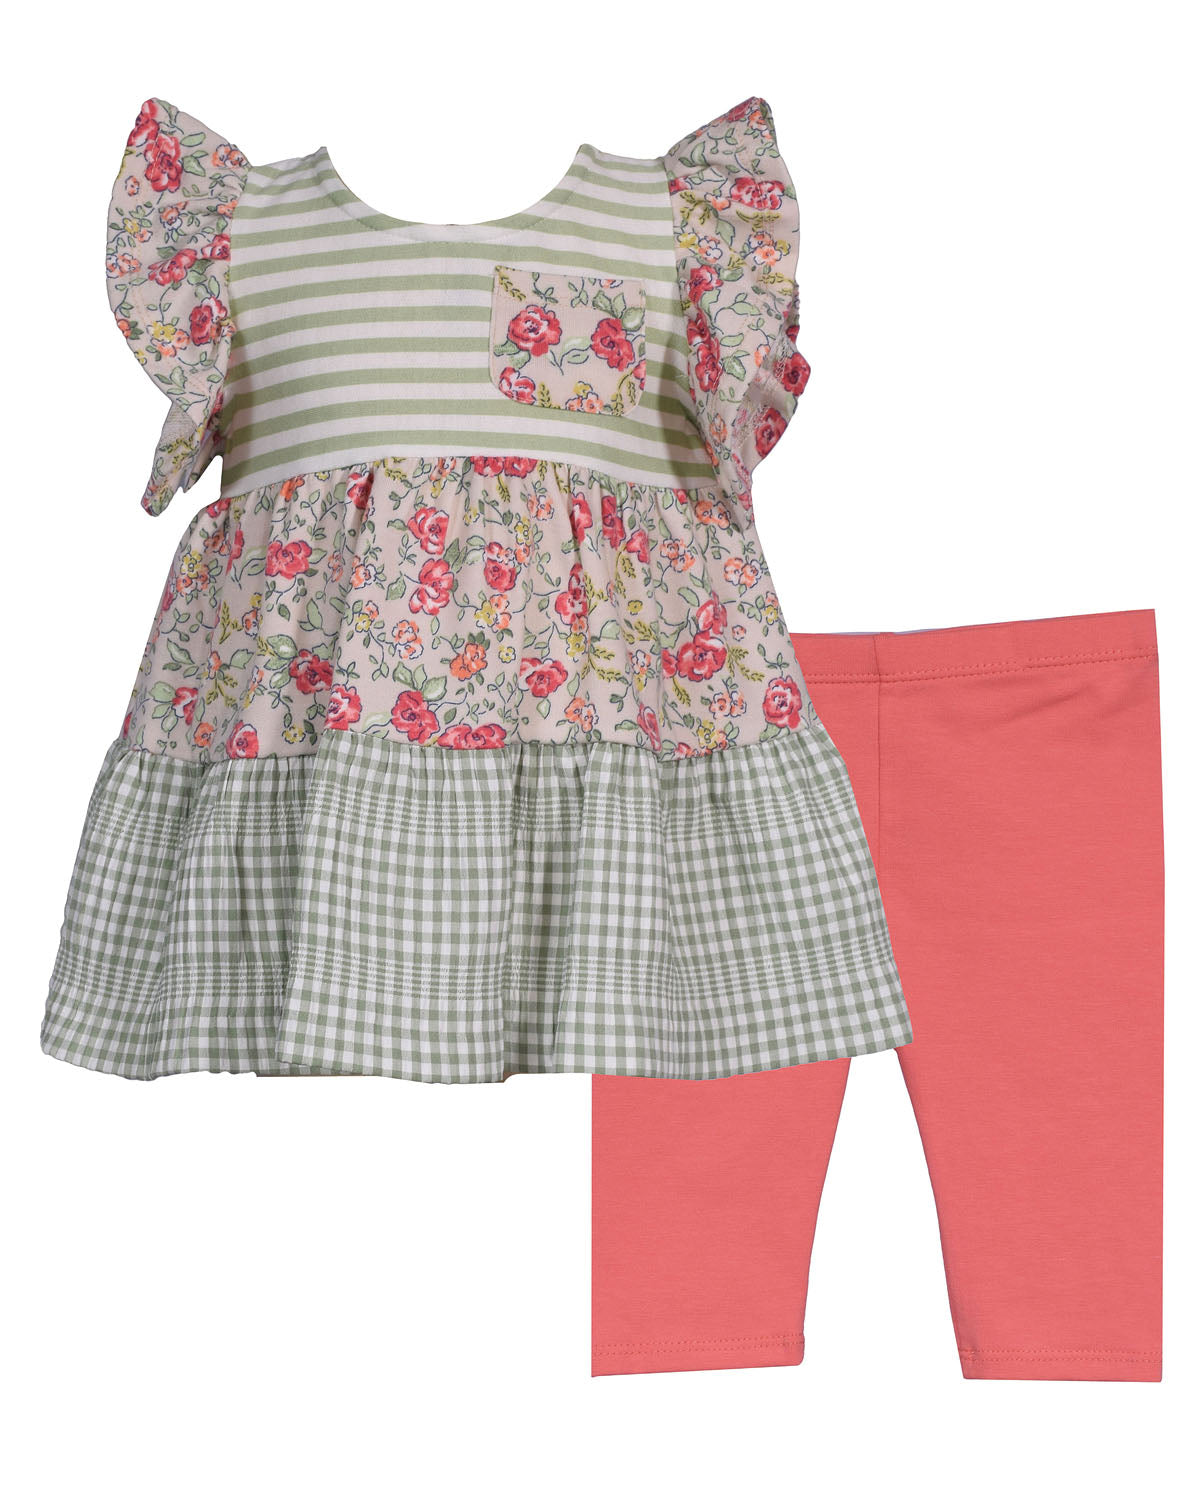 Bonnie Jean Toddler Girl Mash Up Stripe and Floral Legging Set